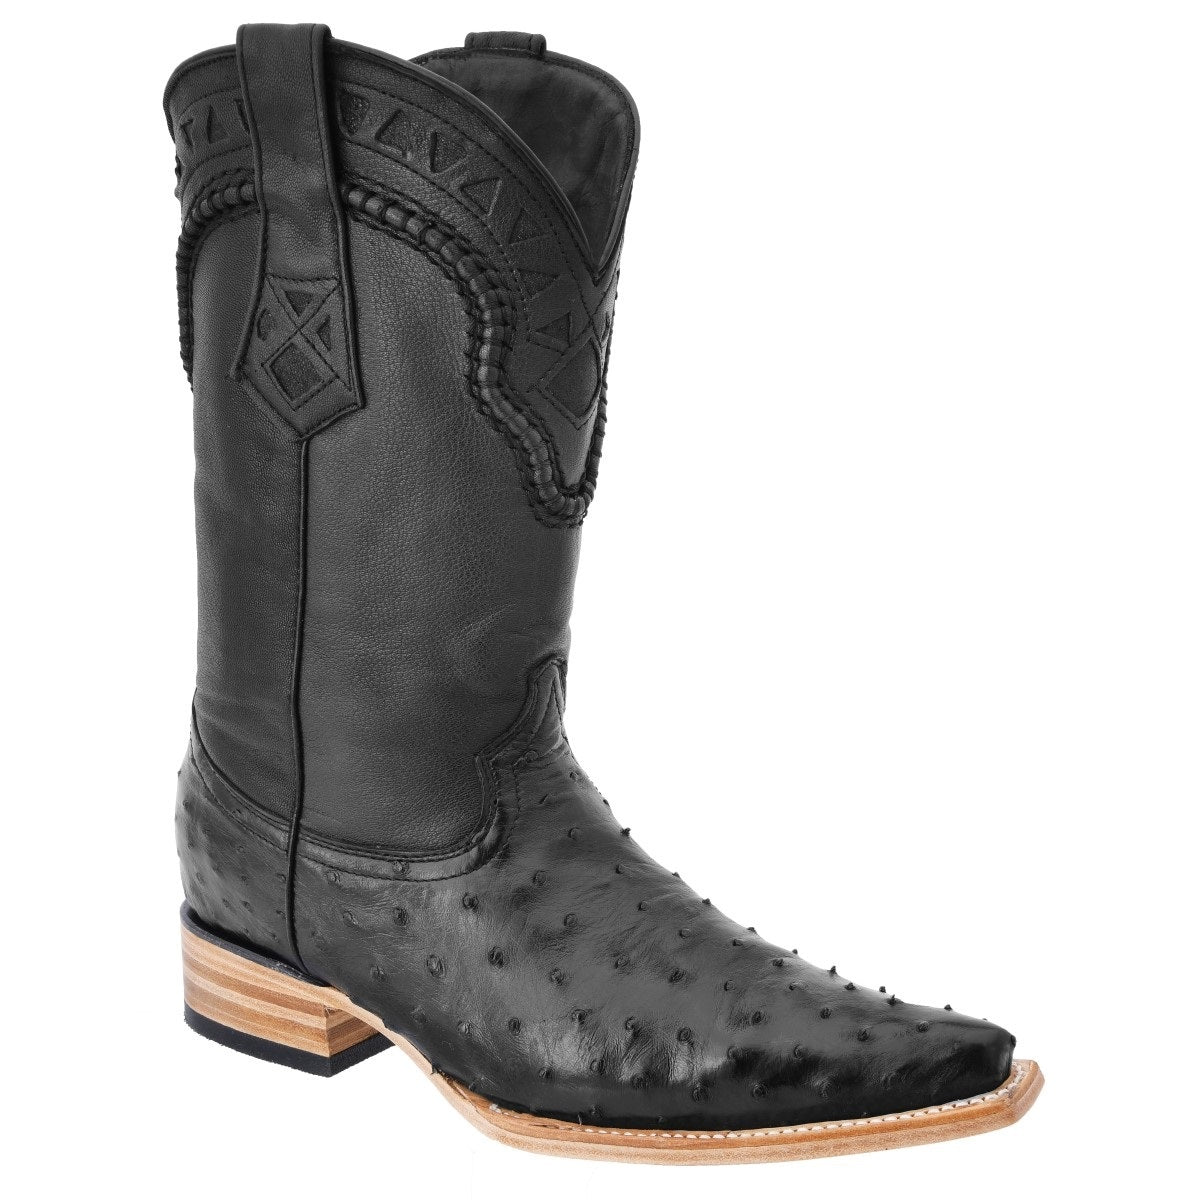 Botas Vaqueras TM-WD0040 - Western Boots